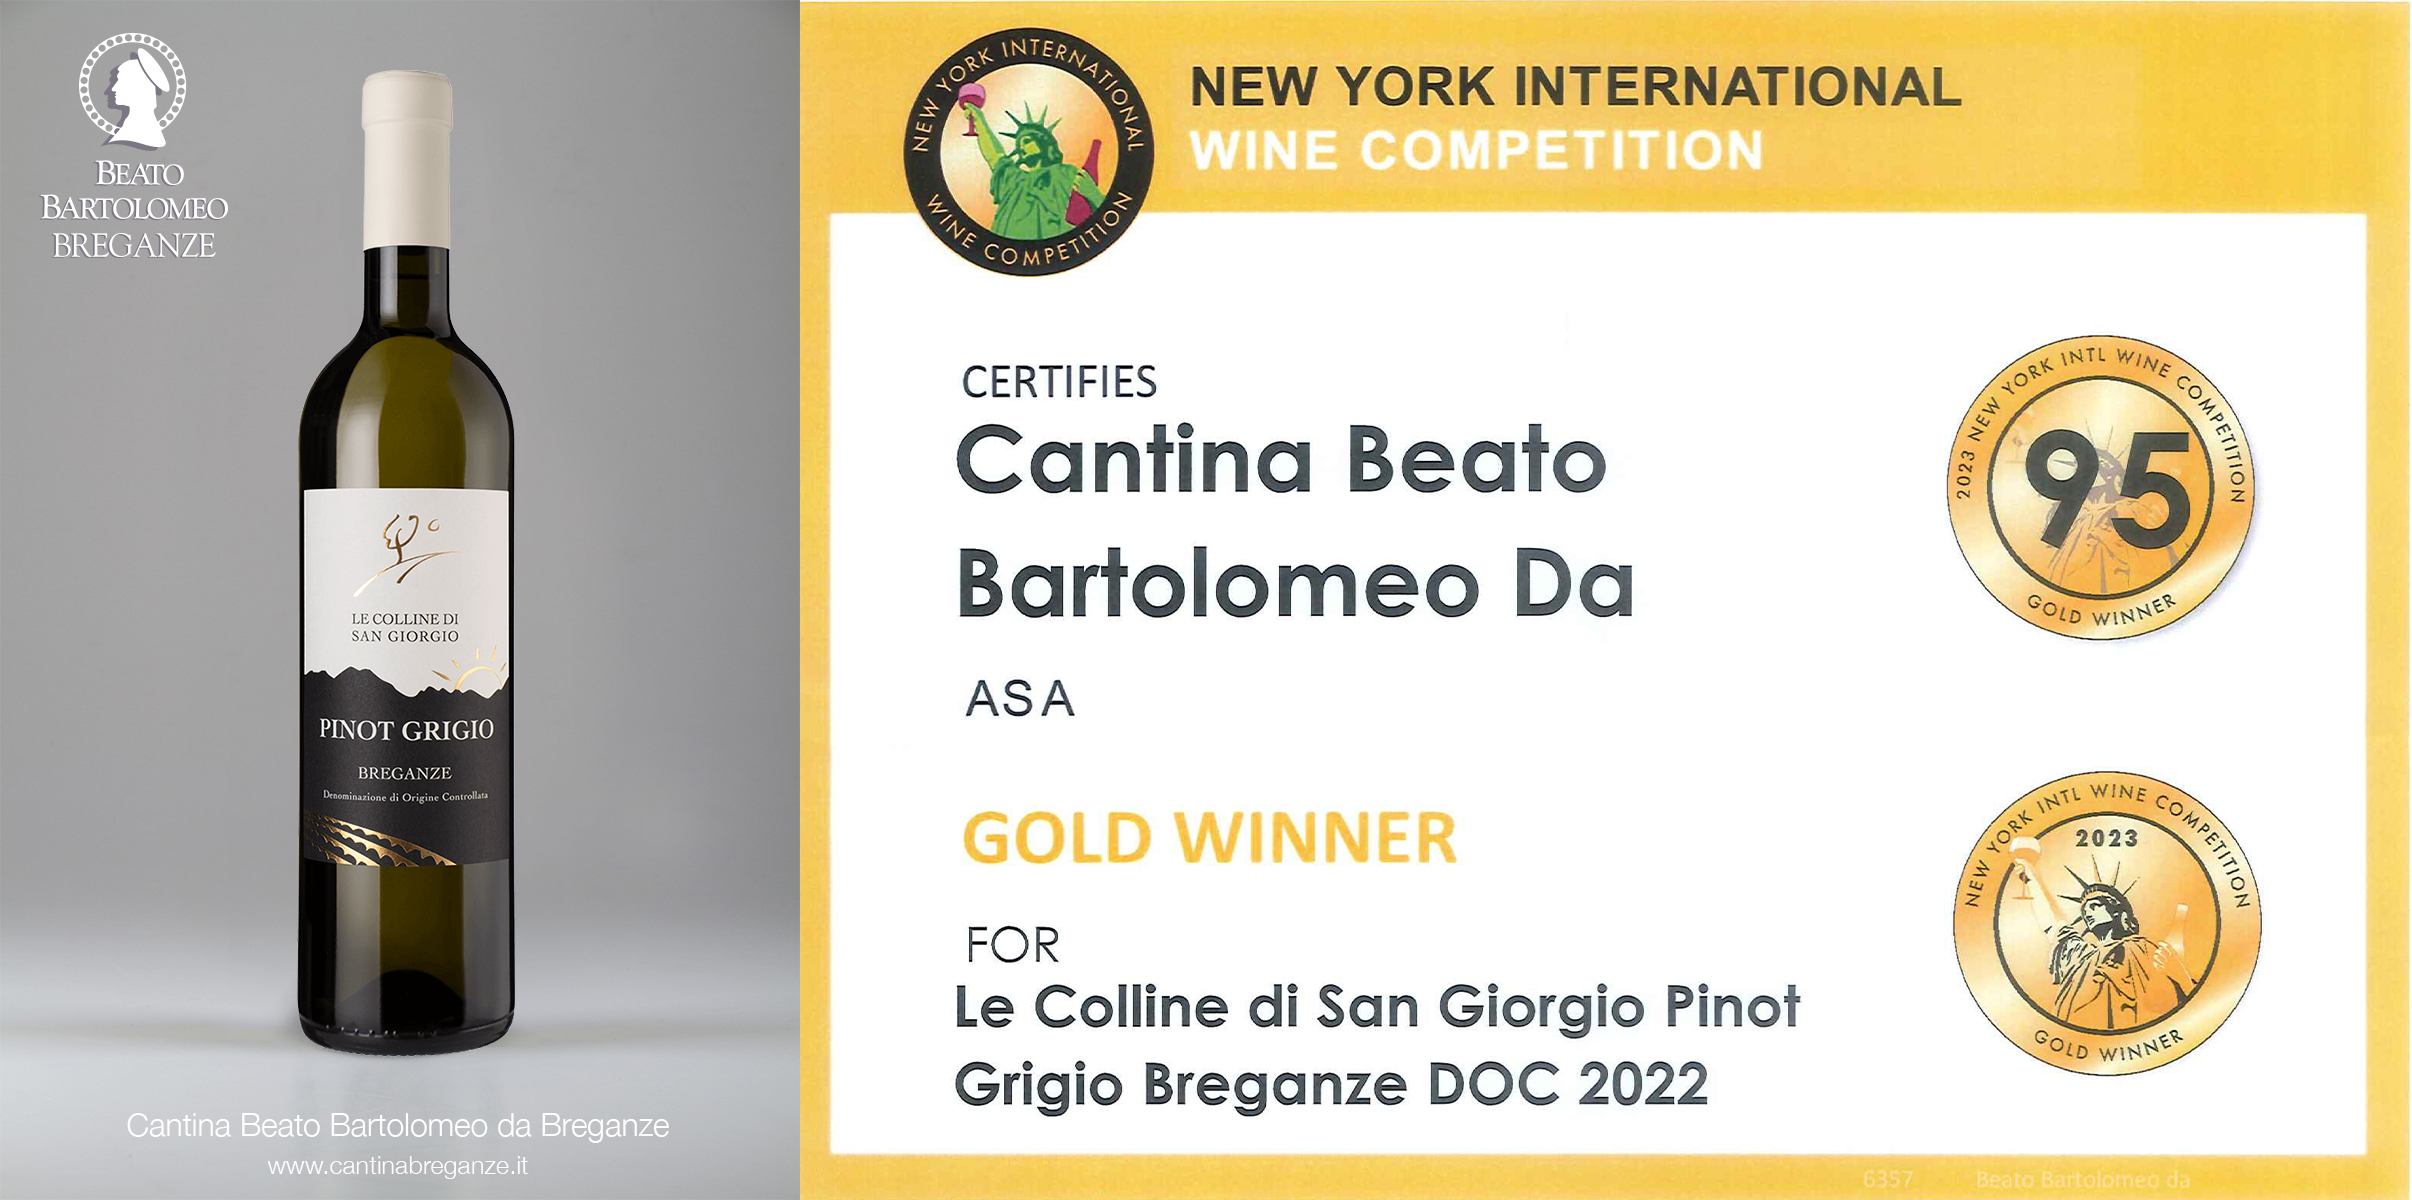 Le Colline di San Giorgio Pinot Grigio Breganze DOC 2022 New York International Wine Competition